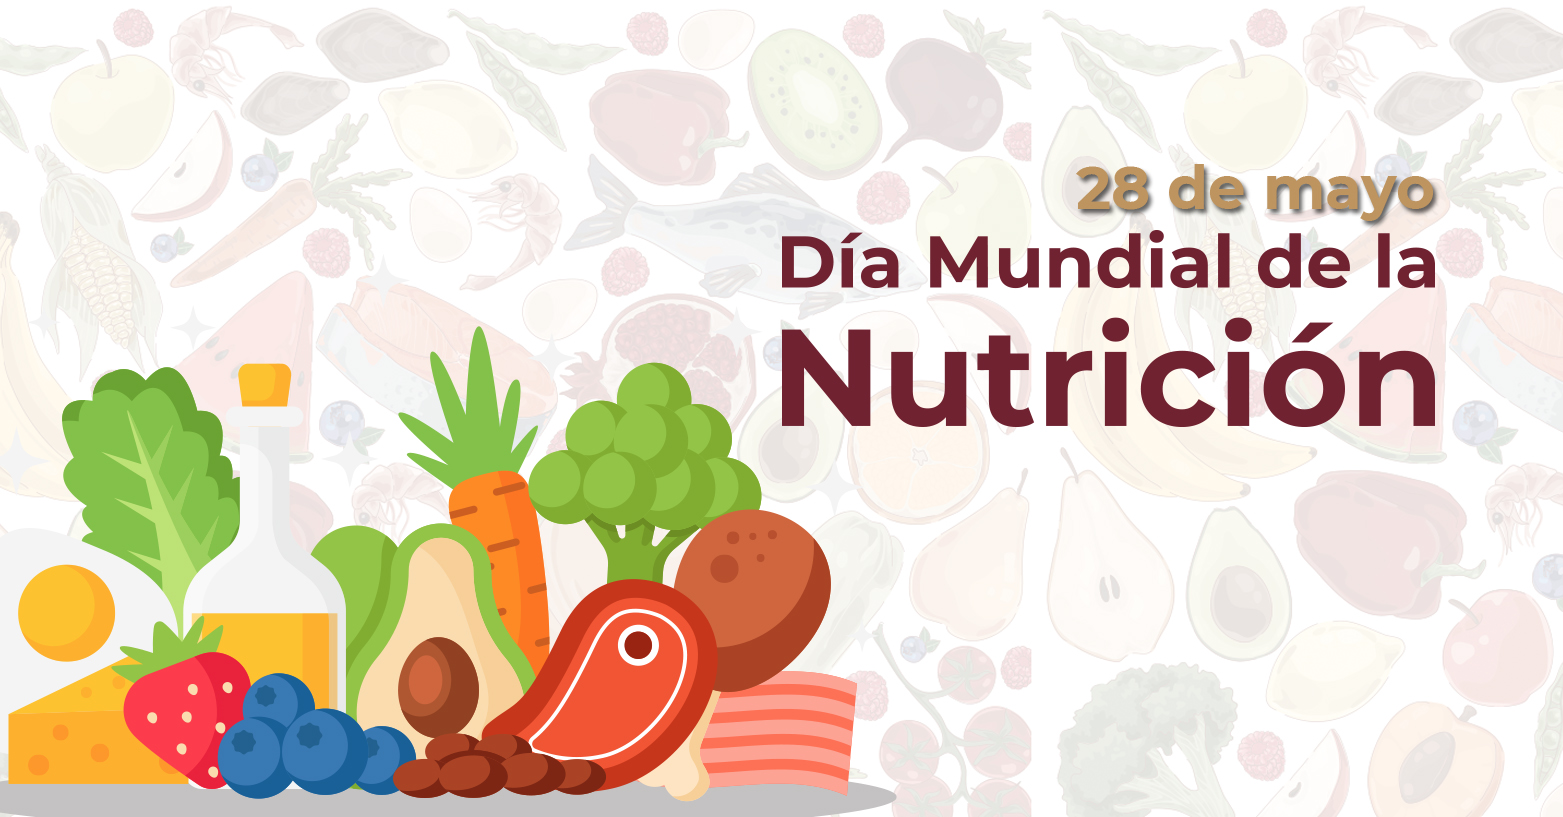 Día Mundial de la Nutrición | 28 de mayo 